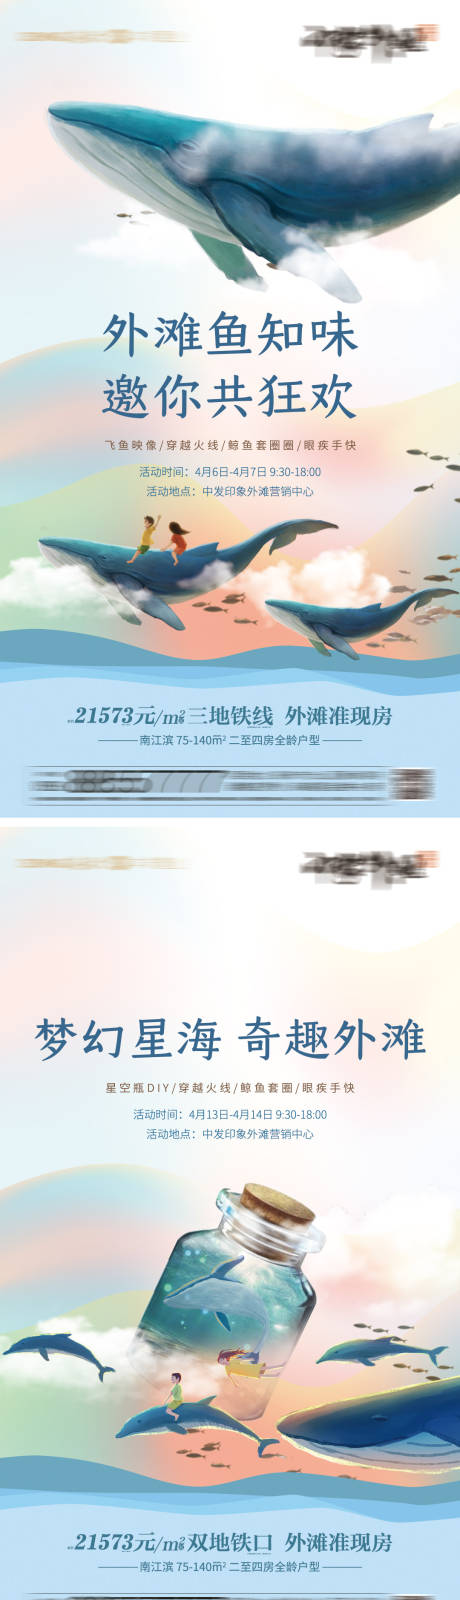 鲸鱼主题系列暖场活动海报